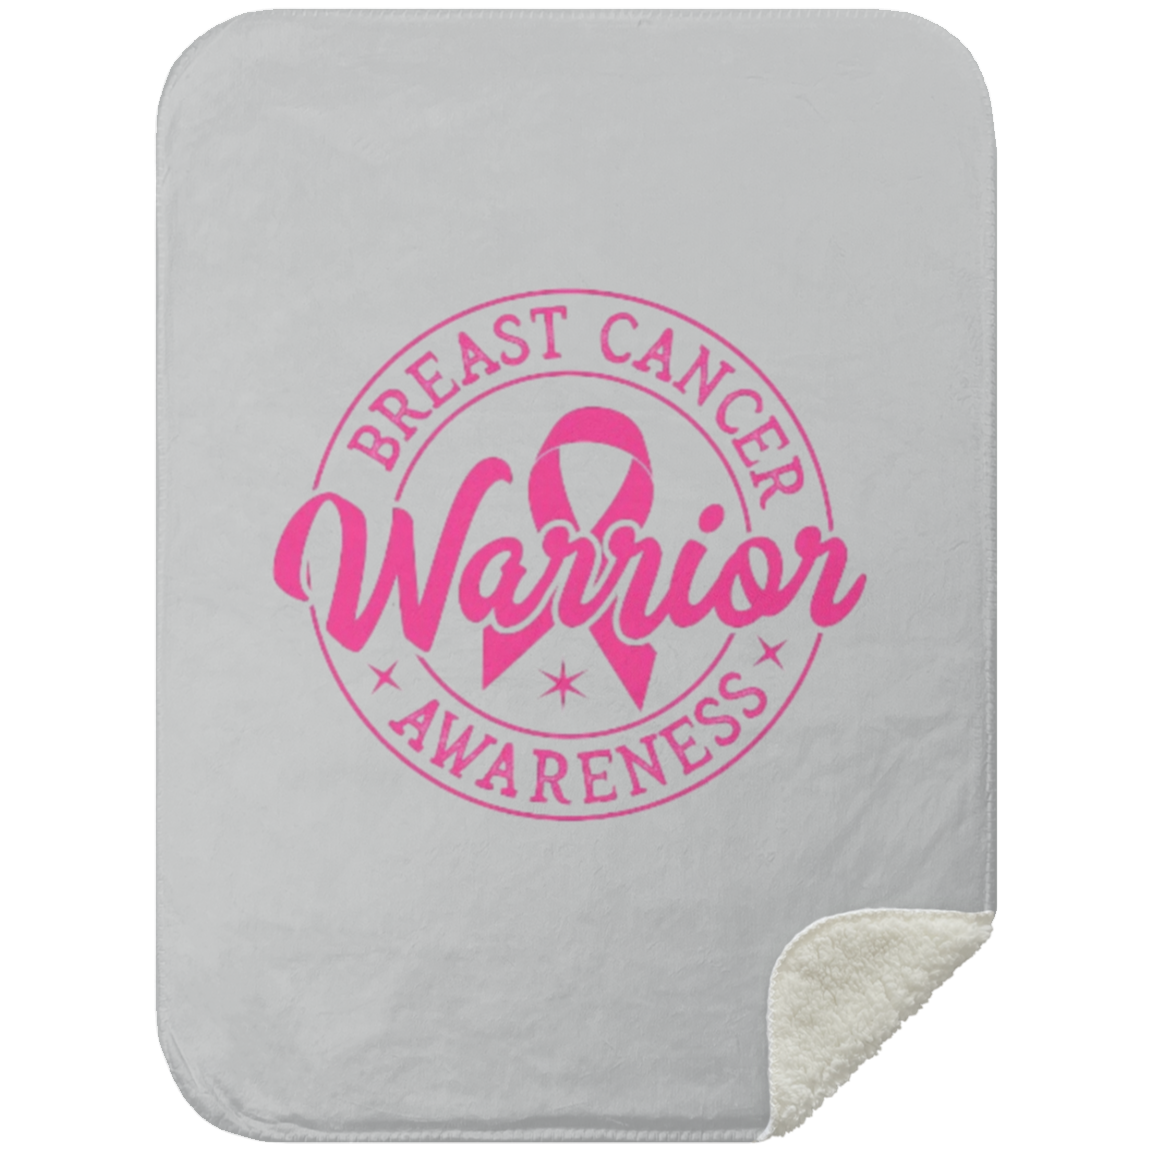 Breast Cancer Warrior - Mink Sherpa Blanket 30x40